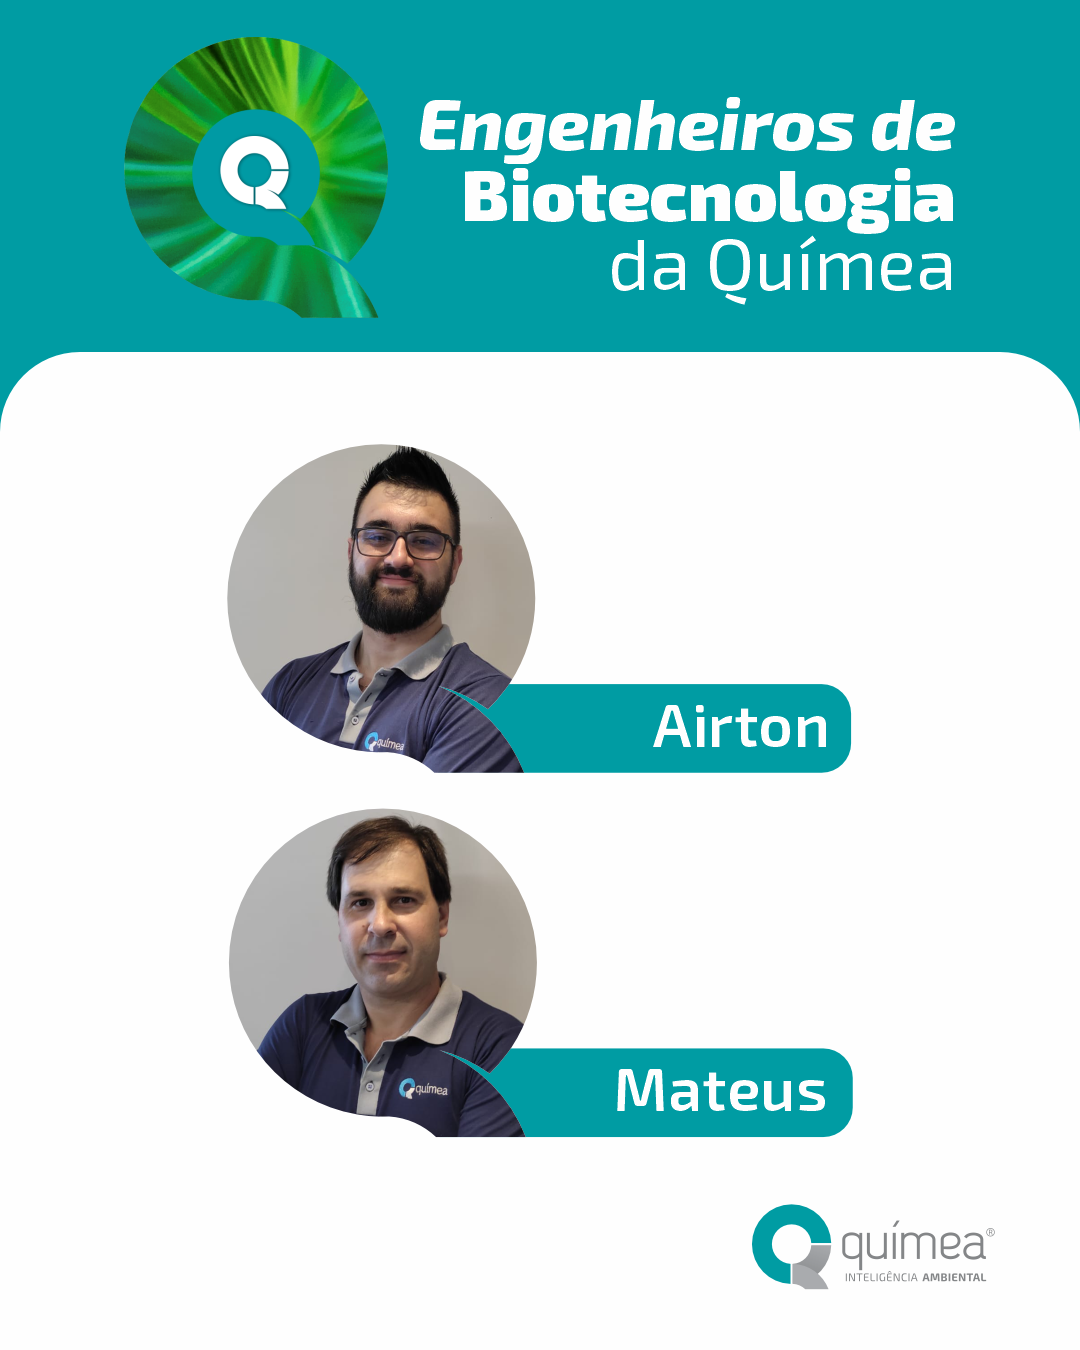 Parabéns, Engenheiros de Biotecnologia!